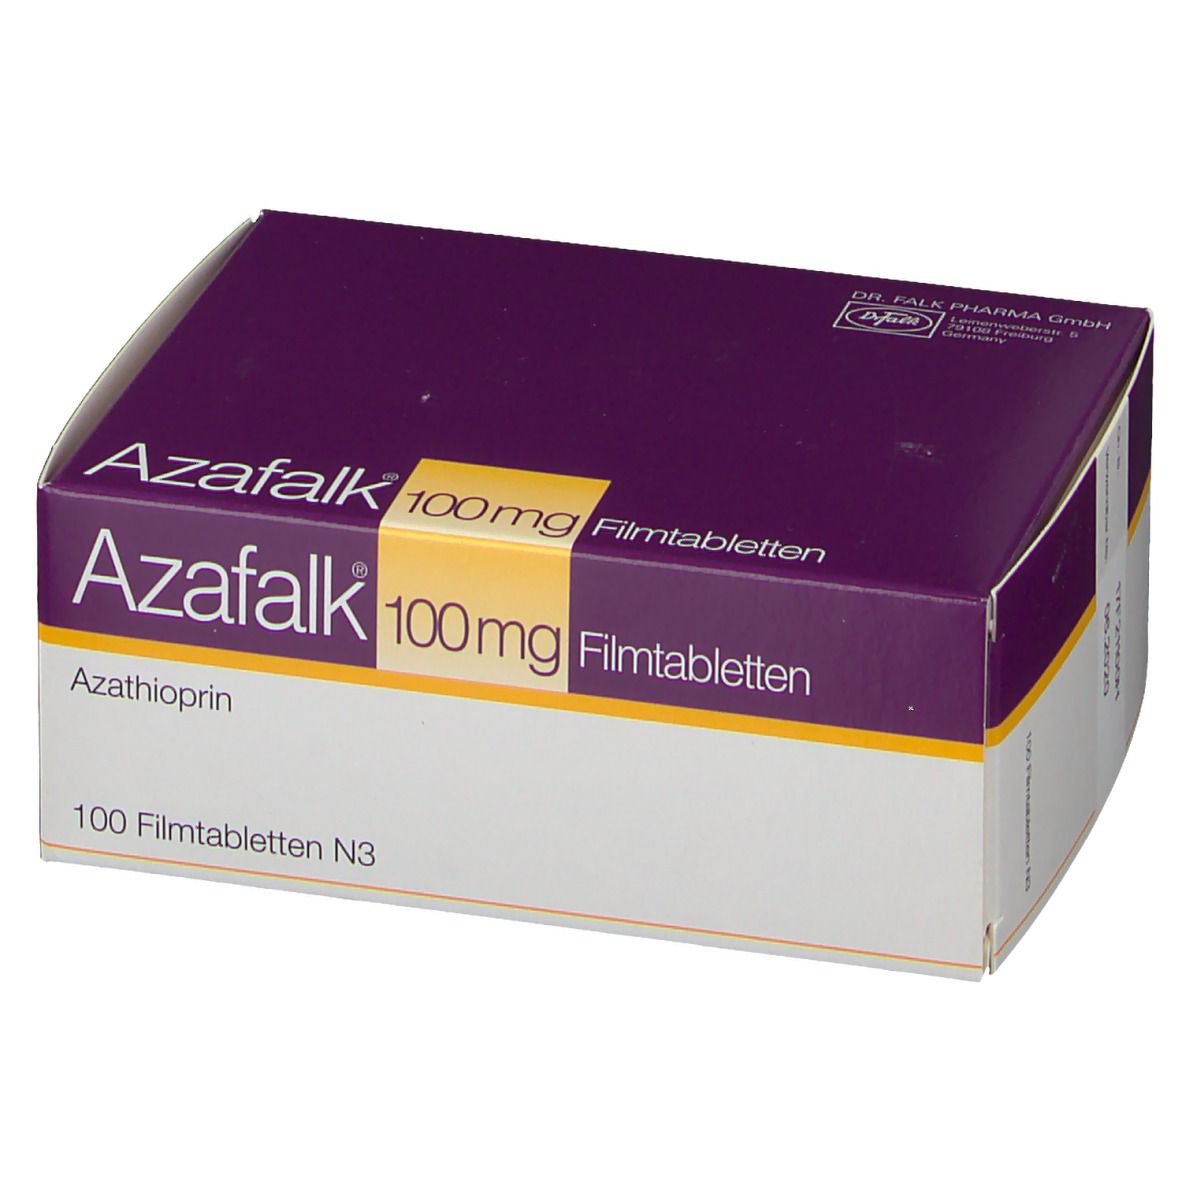 Azafalk® 100 mg